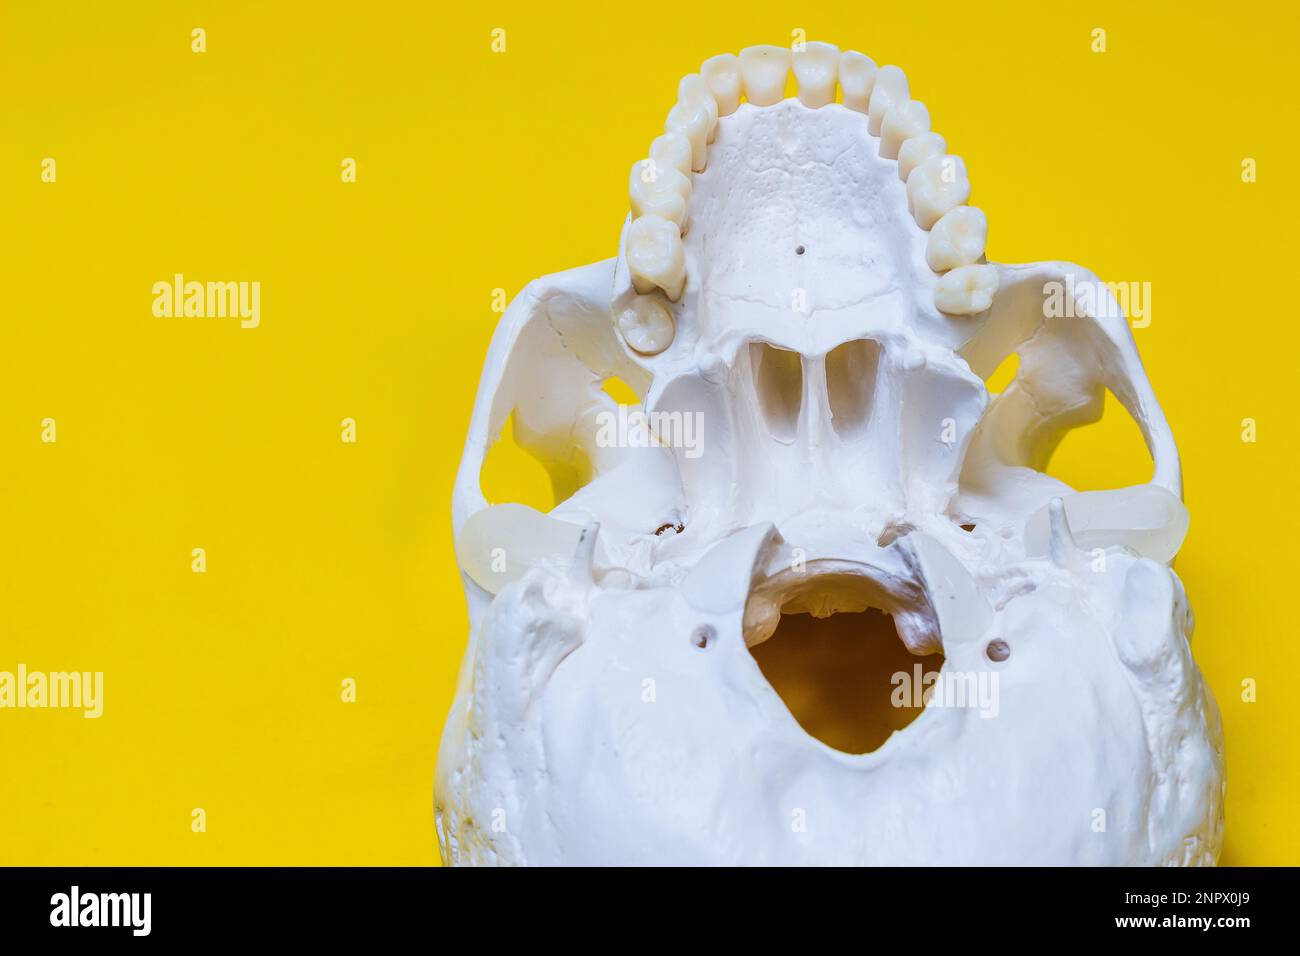 Cranio umano la struttura dell'osso della testa è una disposizione medica in sezione dal basso, l'oggetto, bianco puro, giace sulla superficie della parte posteriore gialla Foto Stock